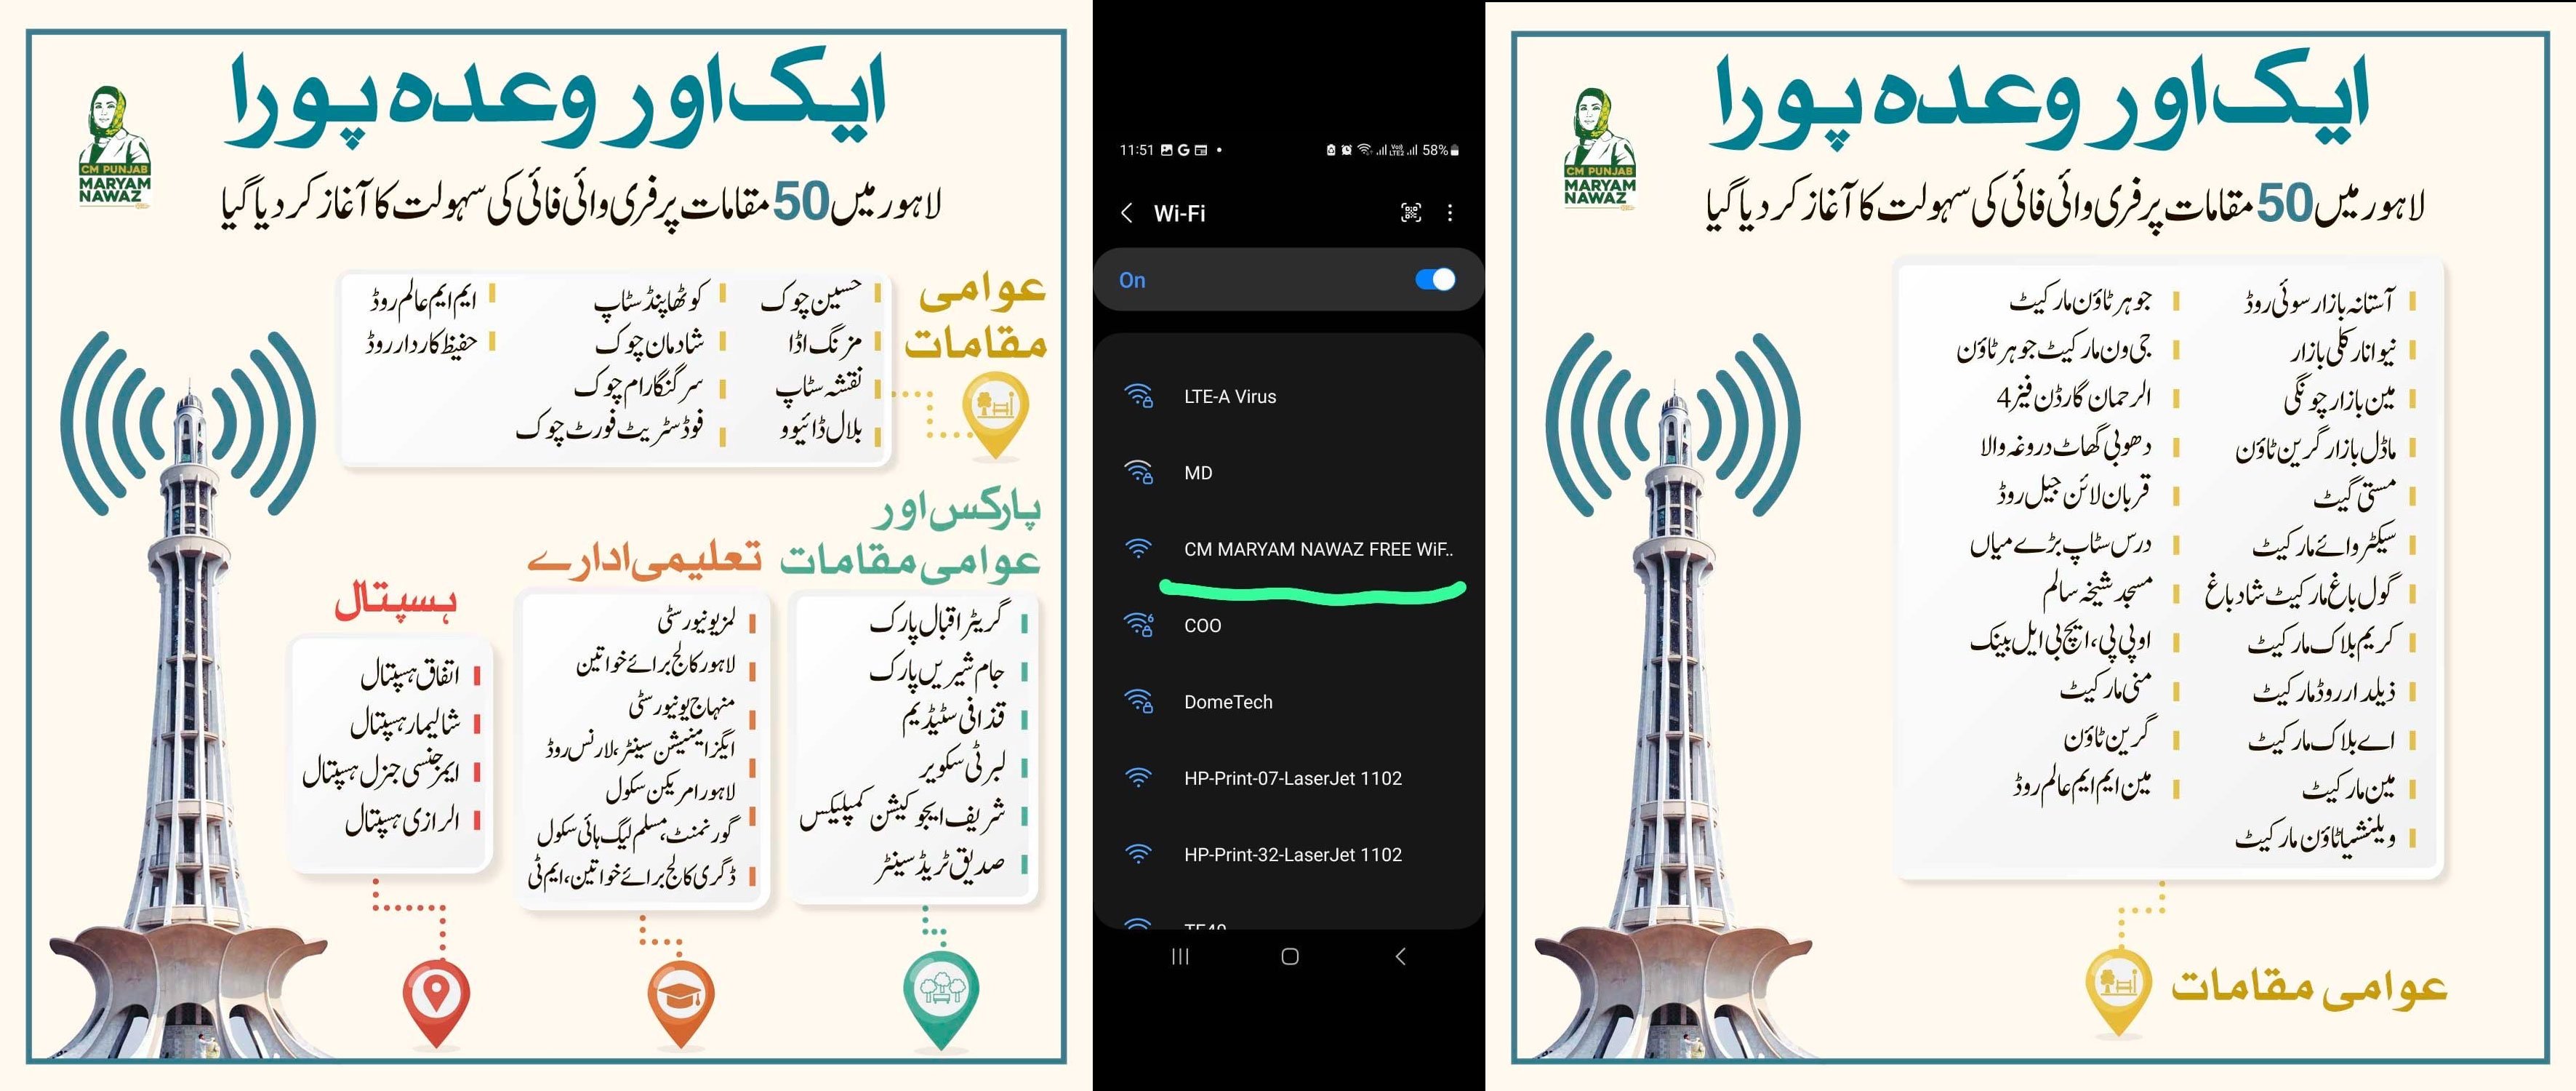 لاہور میں 50 مقامات پر مفت انٹرنیٹ سروس کا آغاز ہوگیا